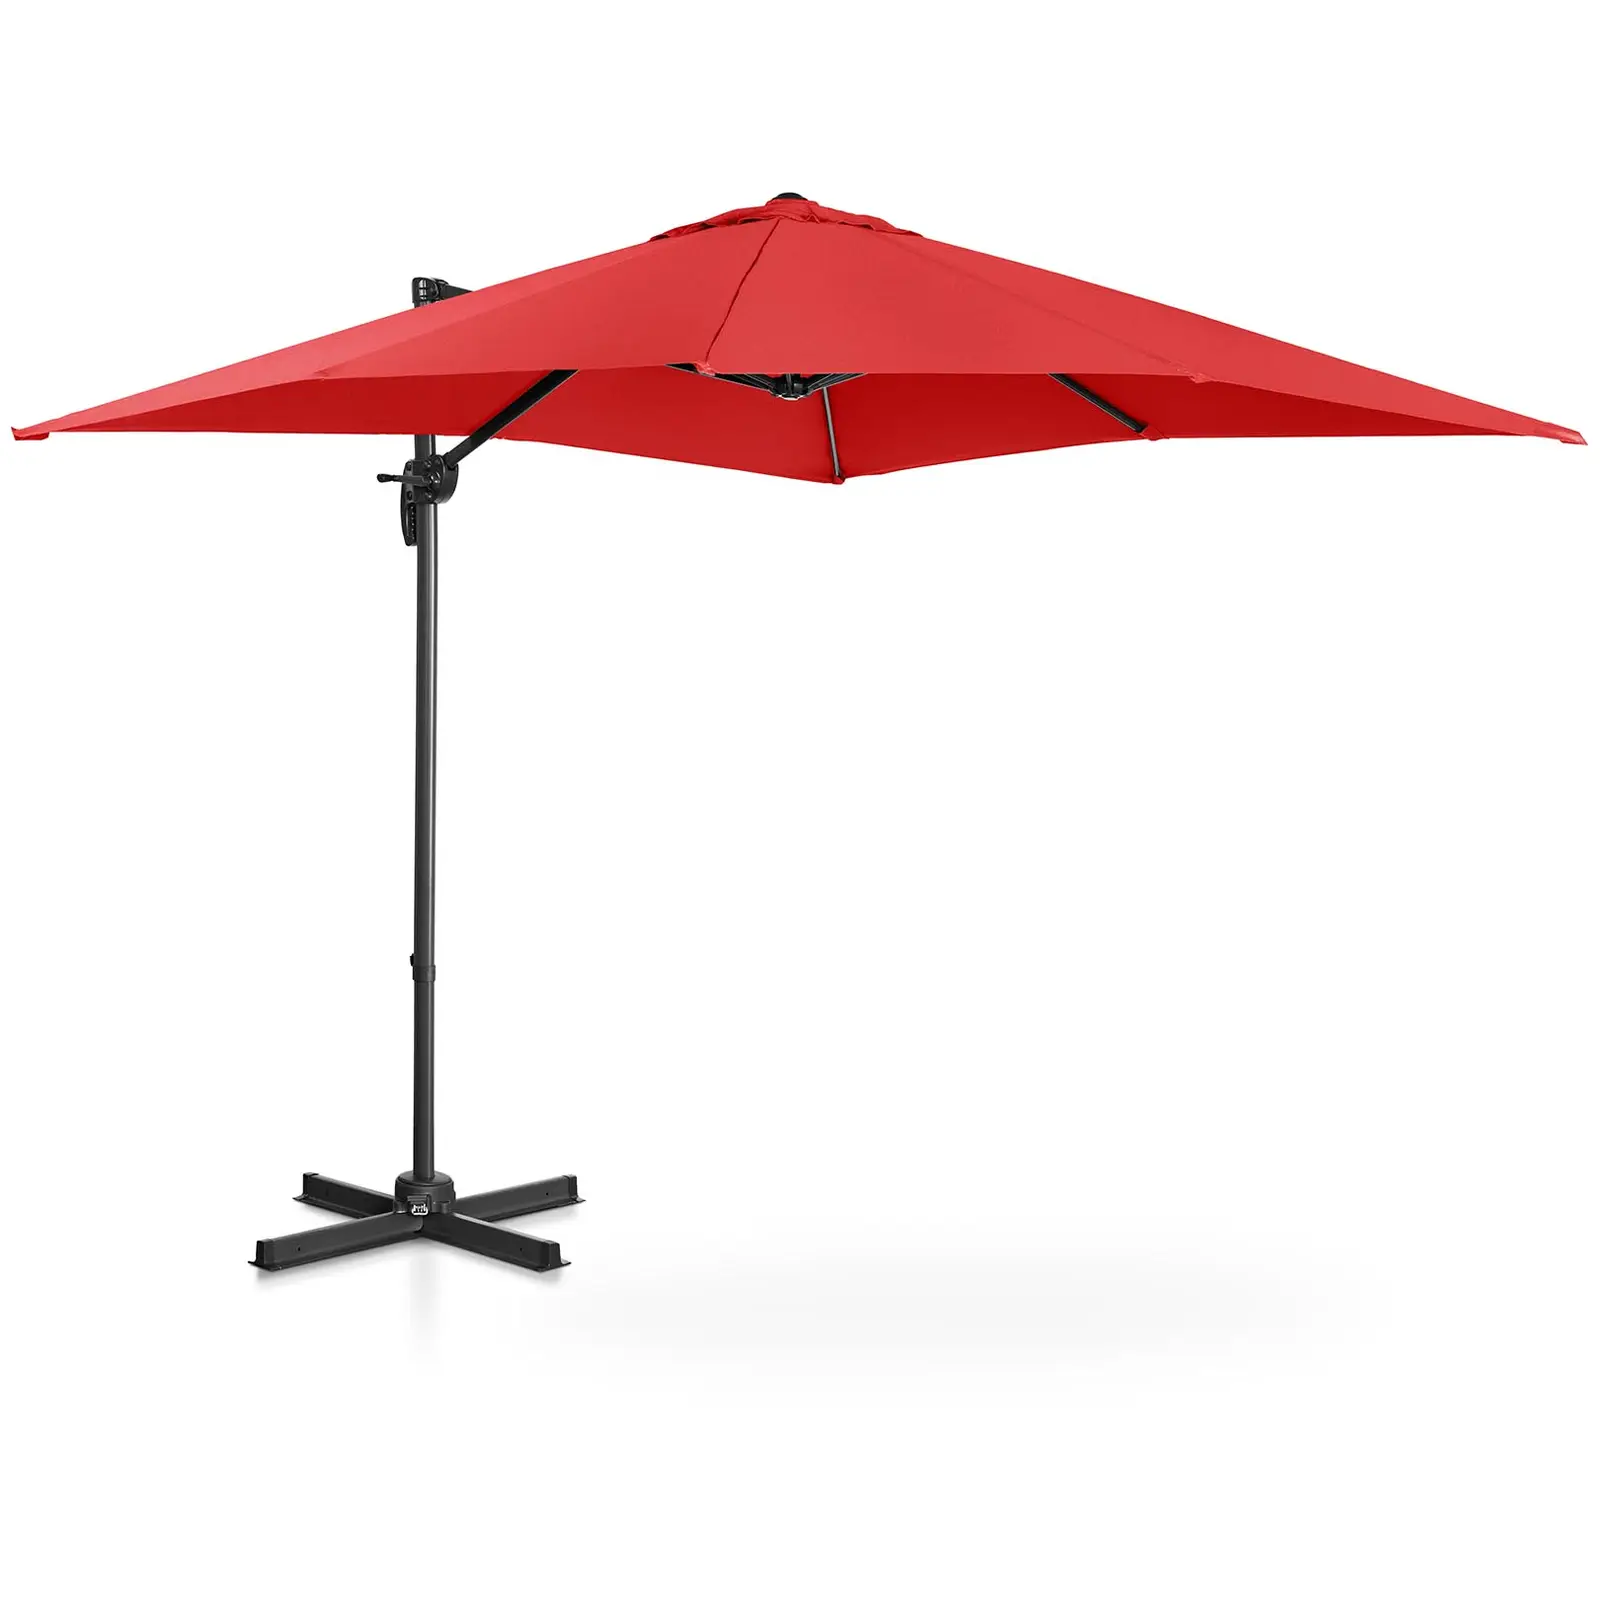 Lámpa formájú napernyő - piros - szögletes - 250 x 250 cm - forgatható